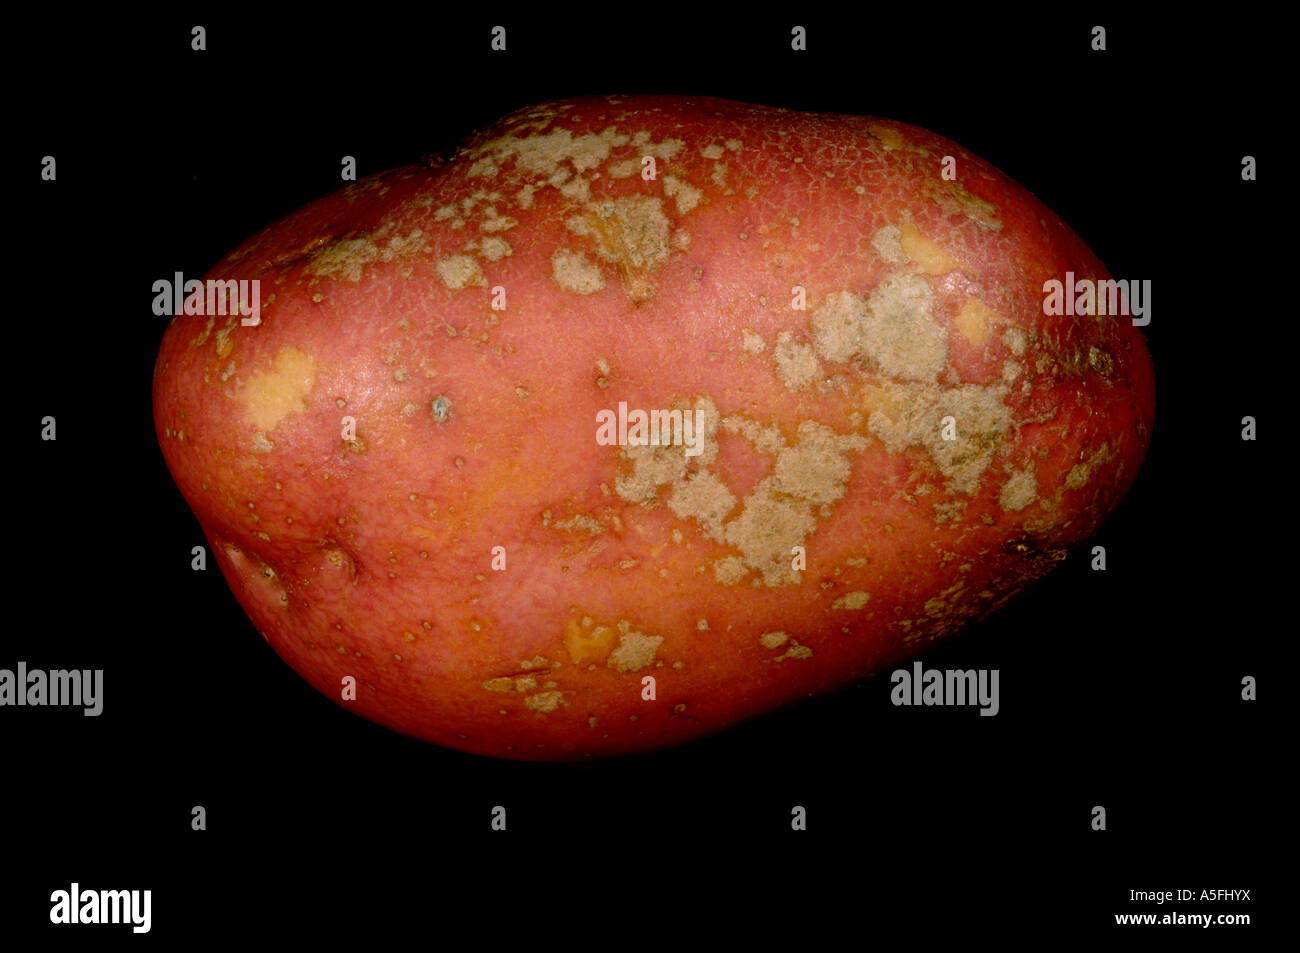 Silver scurf Helminthosporium solani on red Desiree potato tuber skin Stock Photo